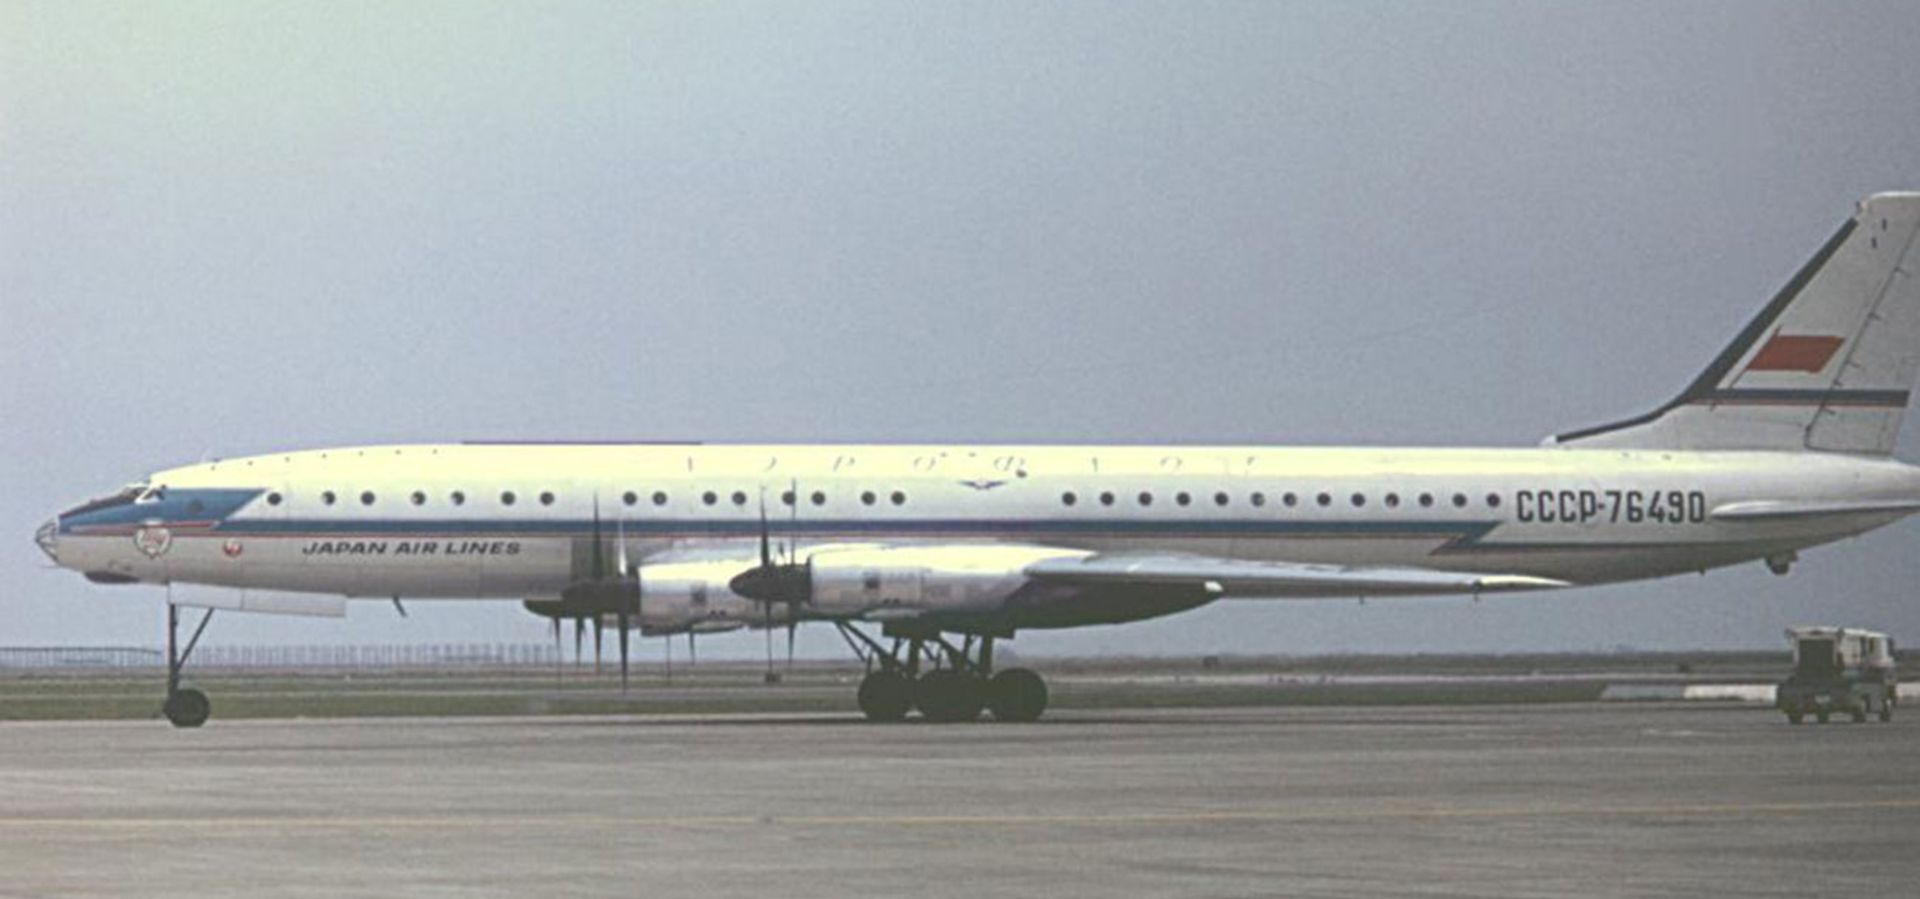 مرجع متخصصين ايران Tu-114 JAL